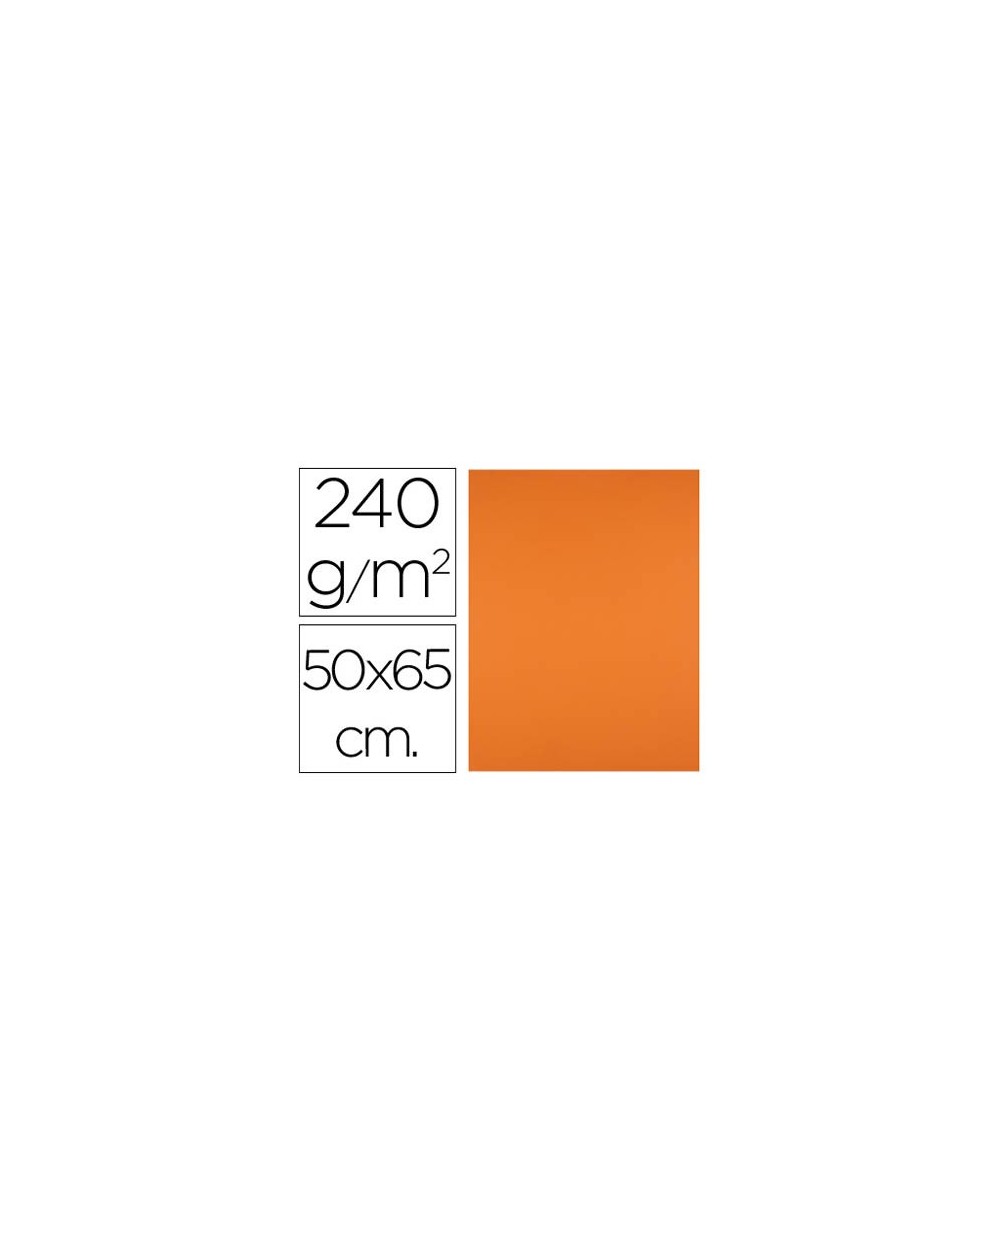 Cartulina liderpapel 50x65 cm 240g m2 naranja paquete de 25 unidades